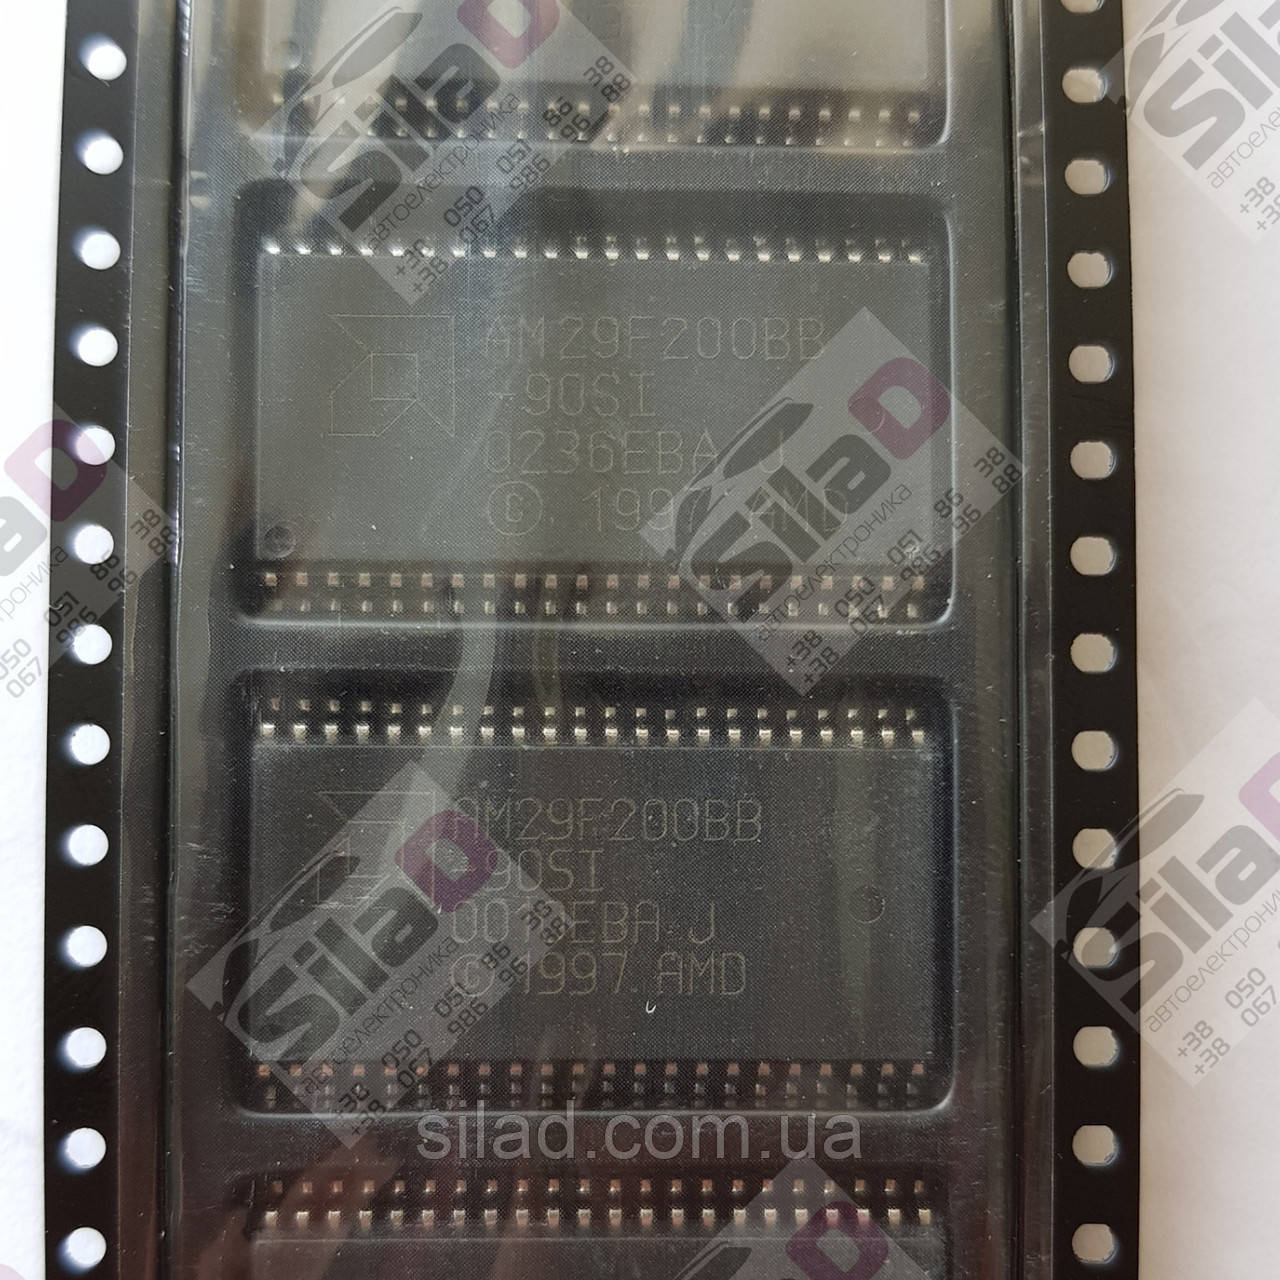 Микросхема AMD AM29F200BB-90SI Flash память корпус PSOP44